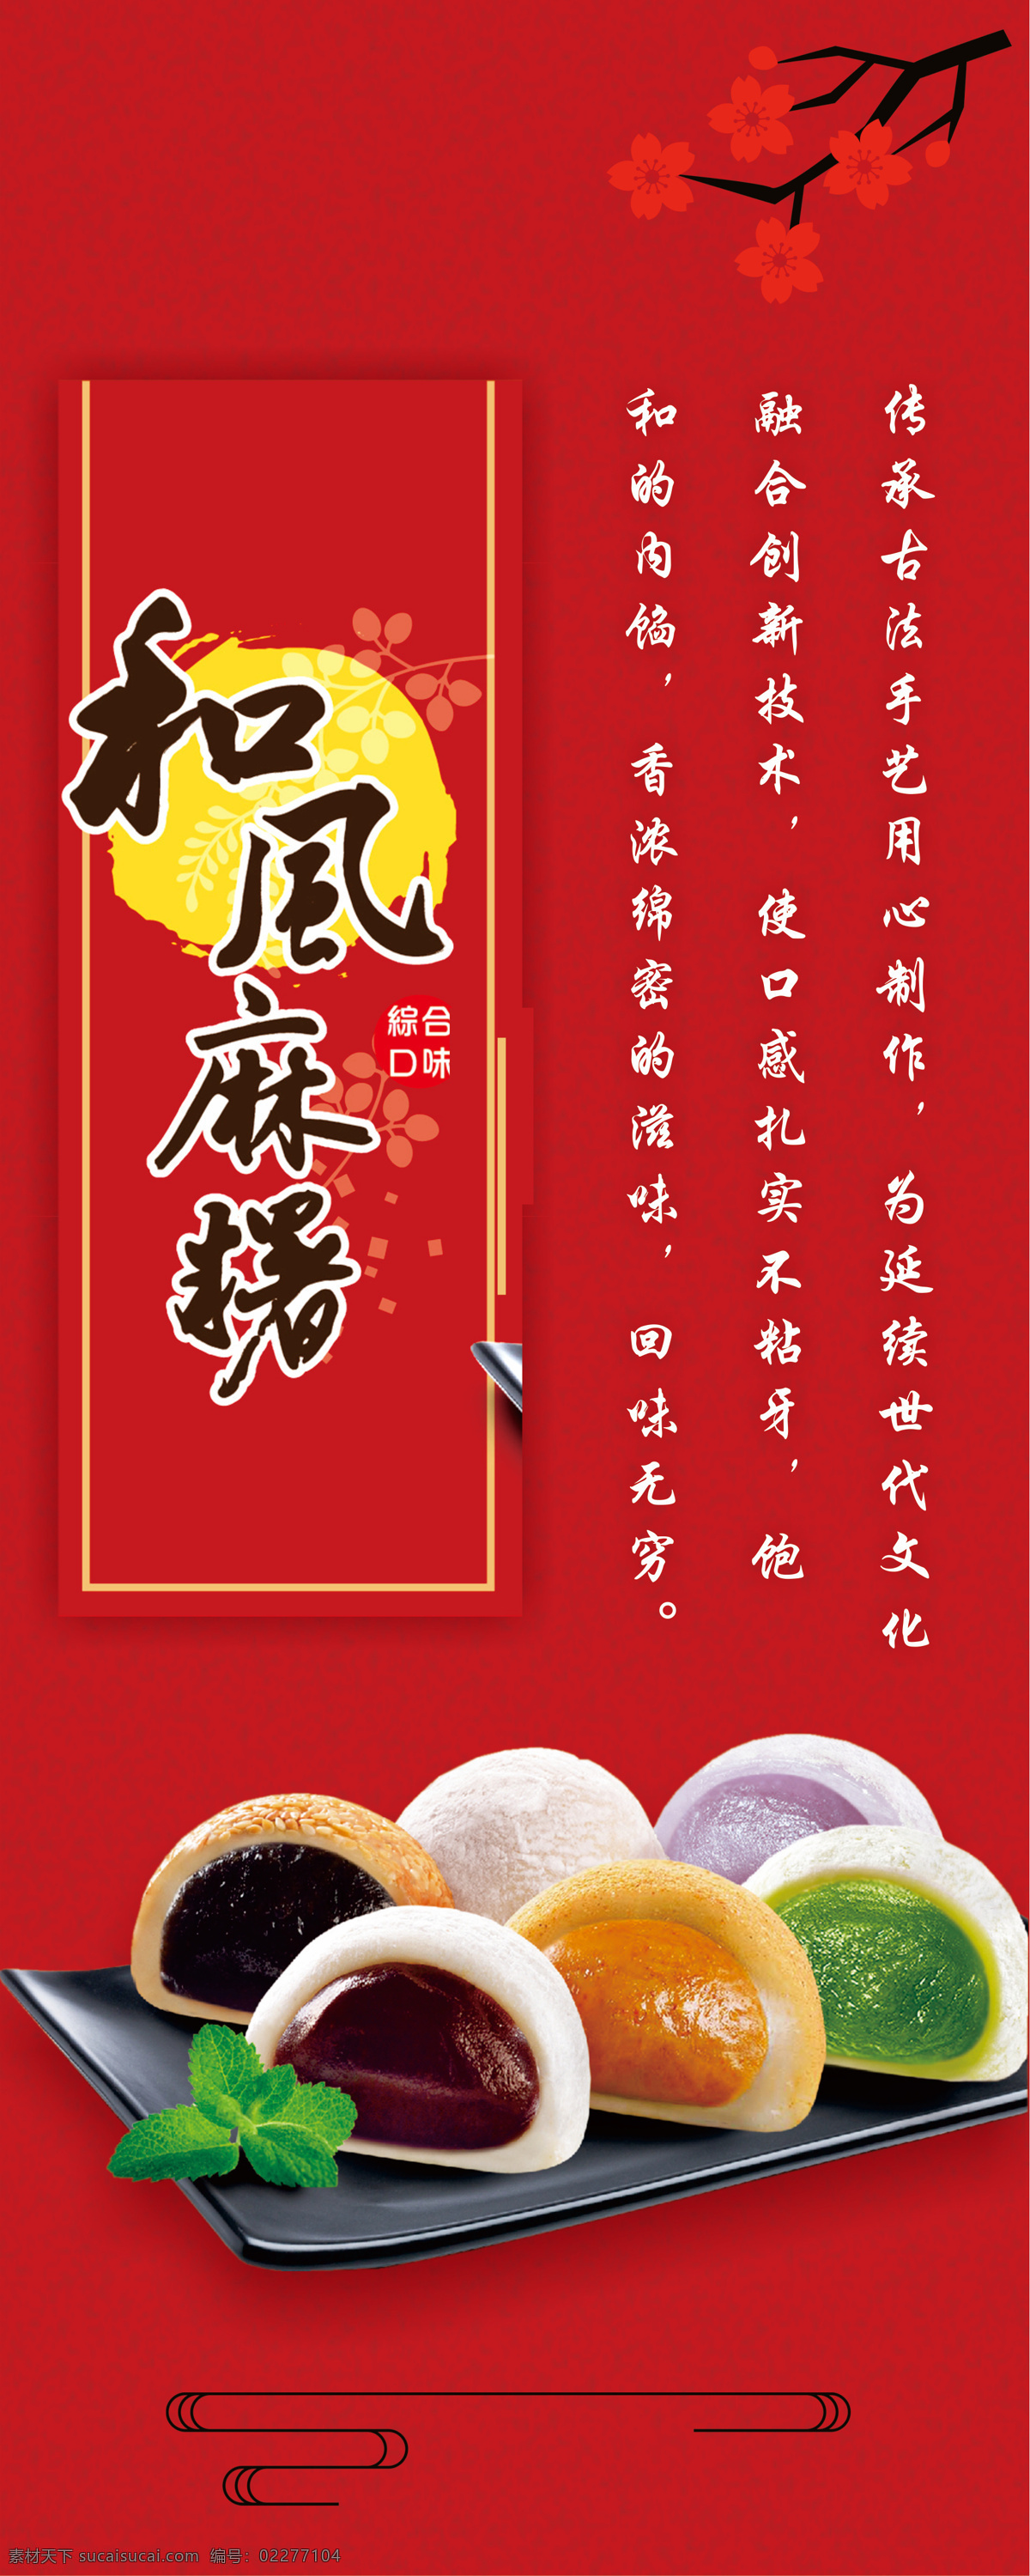 台湾 原住民 和风 麻 糬 海报 麻薯 展板 简约 美食 台湾美食特产 节日喜庆风格